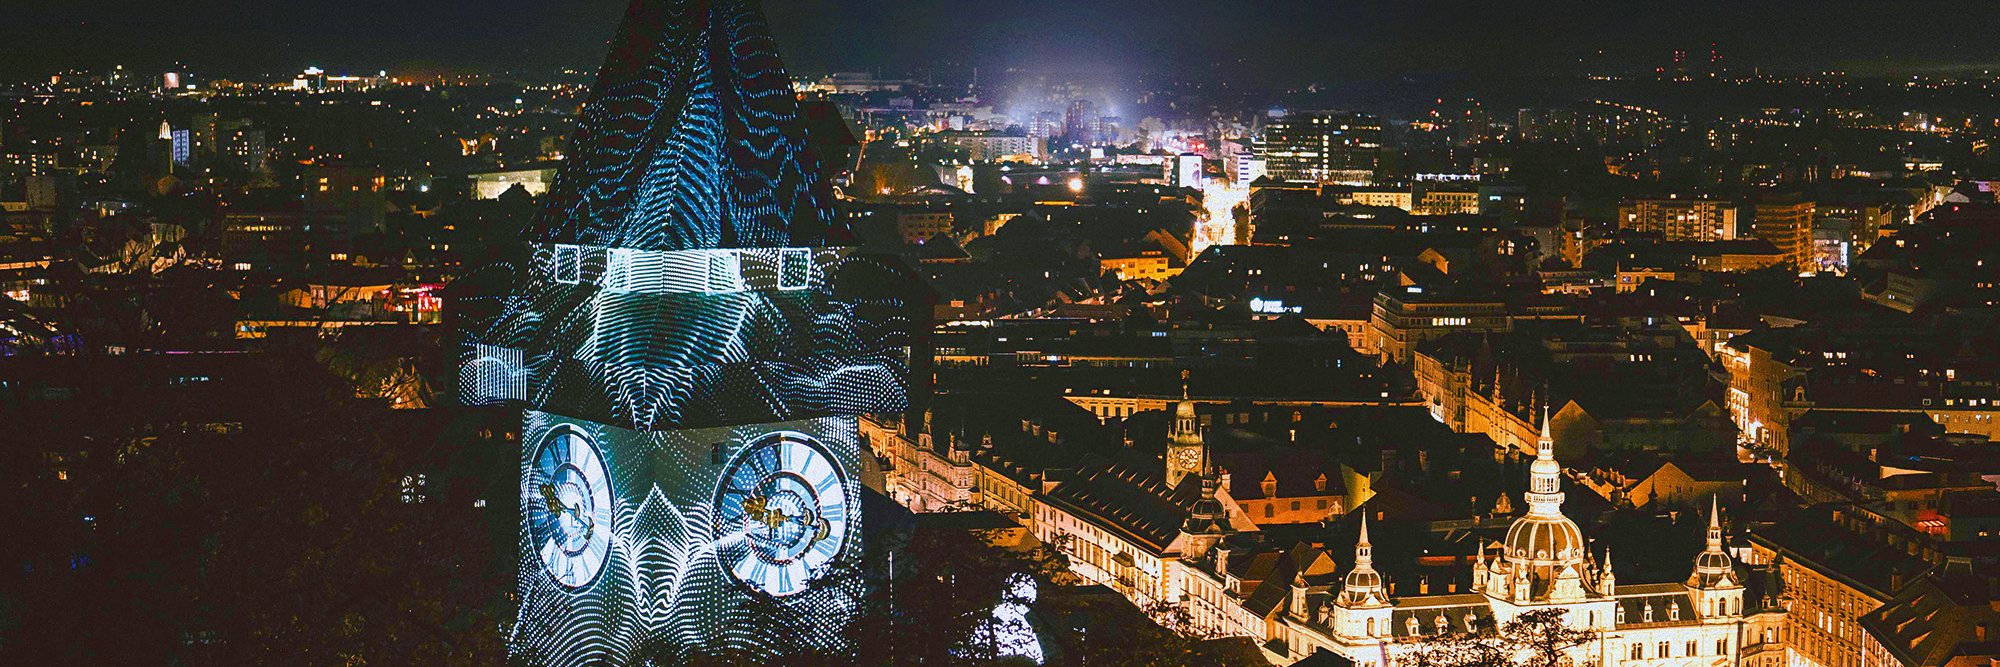 Jedes Jahr im Oktober kehrt KLANGLICHT, das Kunstfestival der Bühnen Graz, in die Mur-Metropole zurück. Und schafft mit Licht und Klang atemberaubende Momente des Staunens.